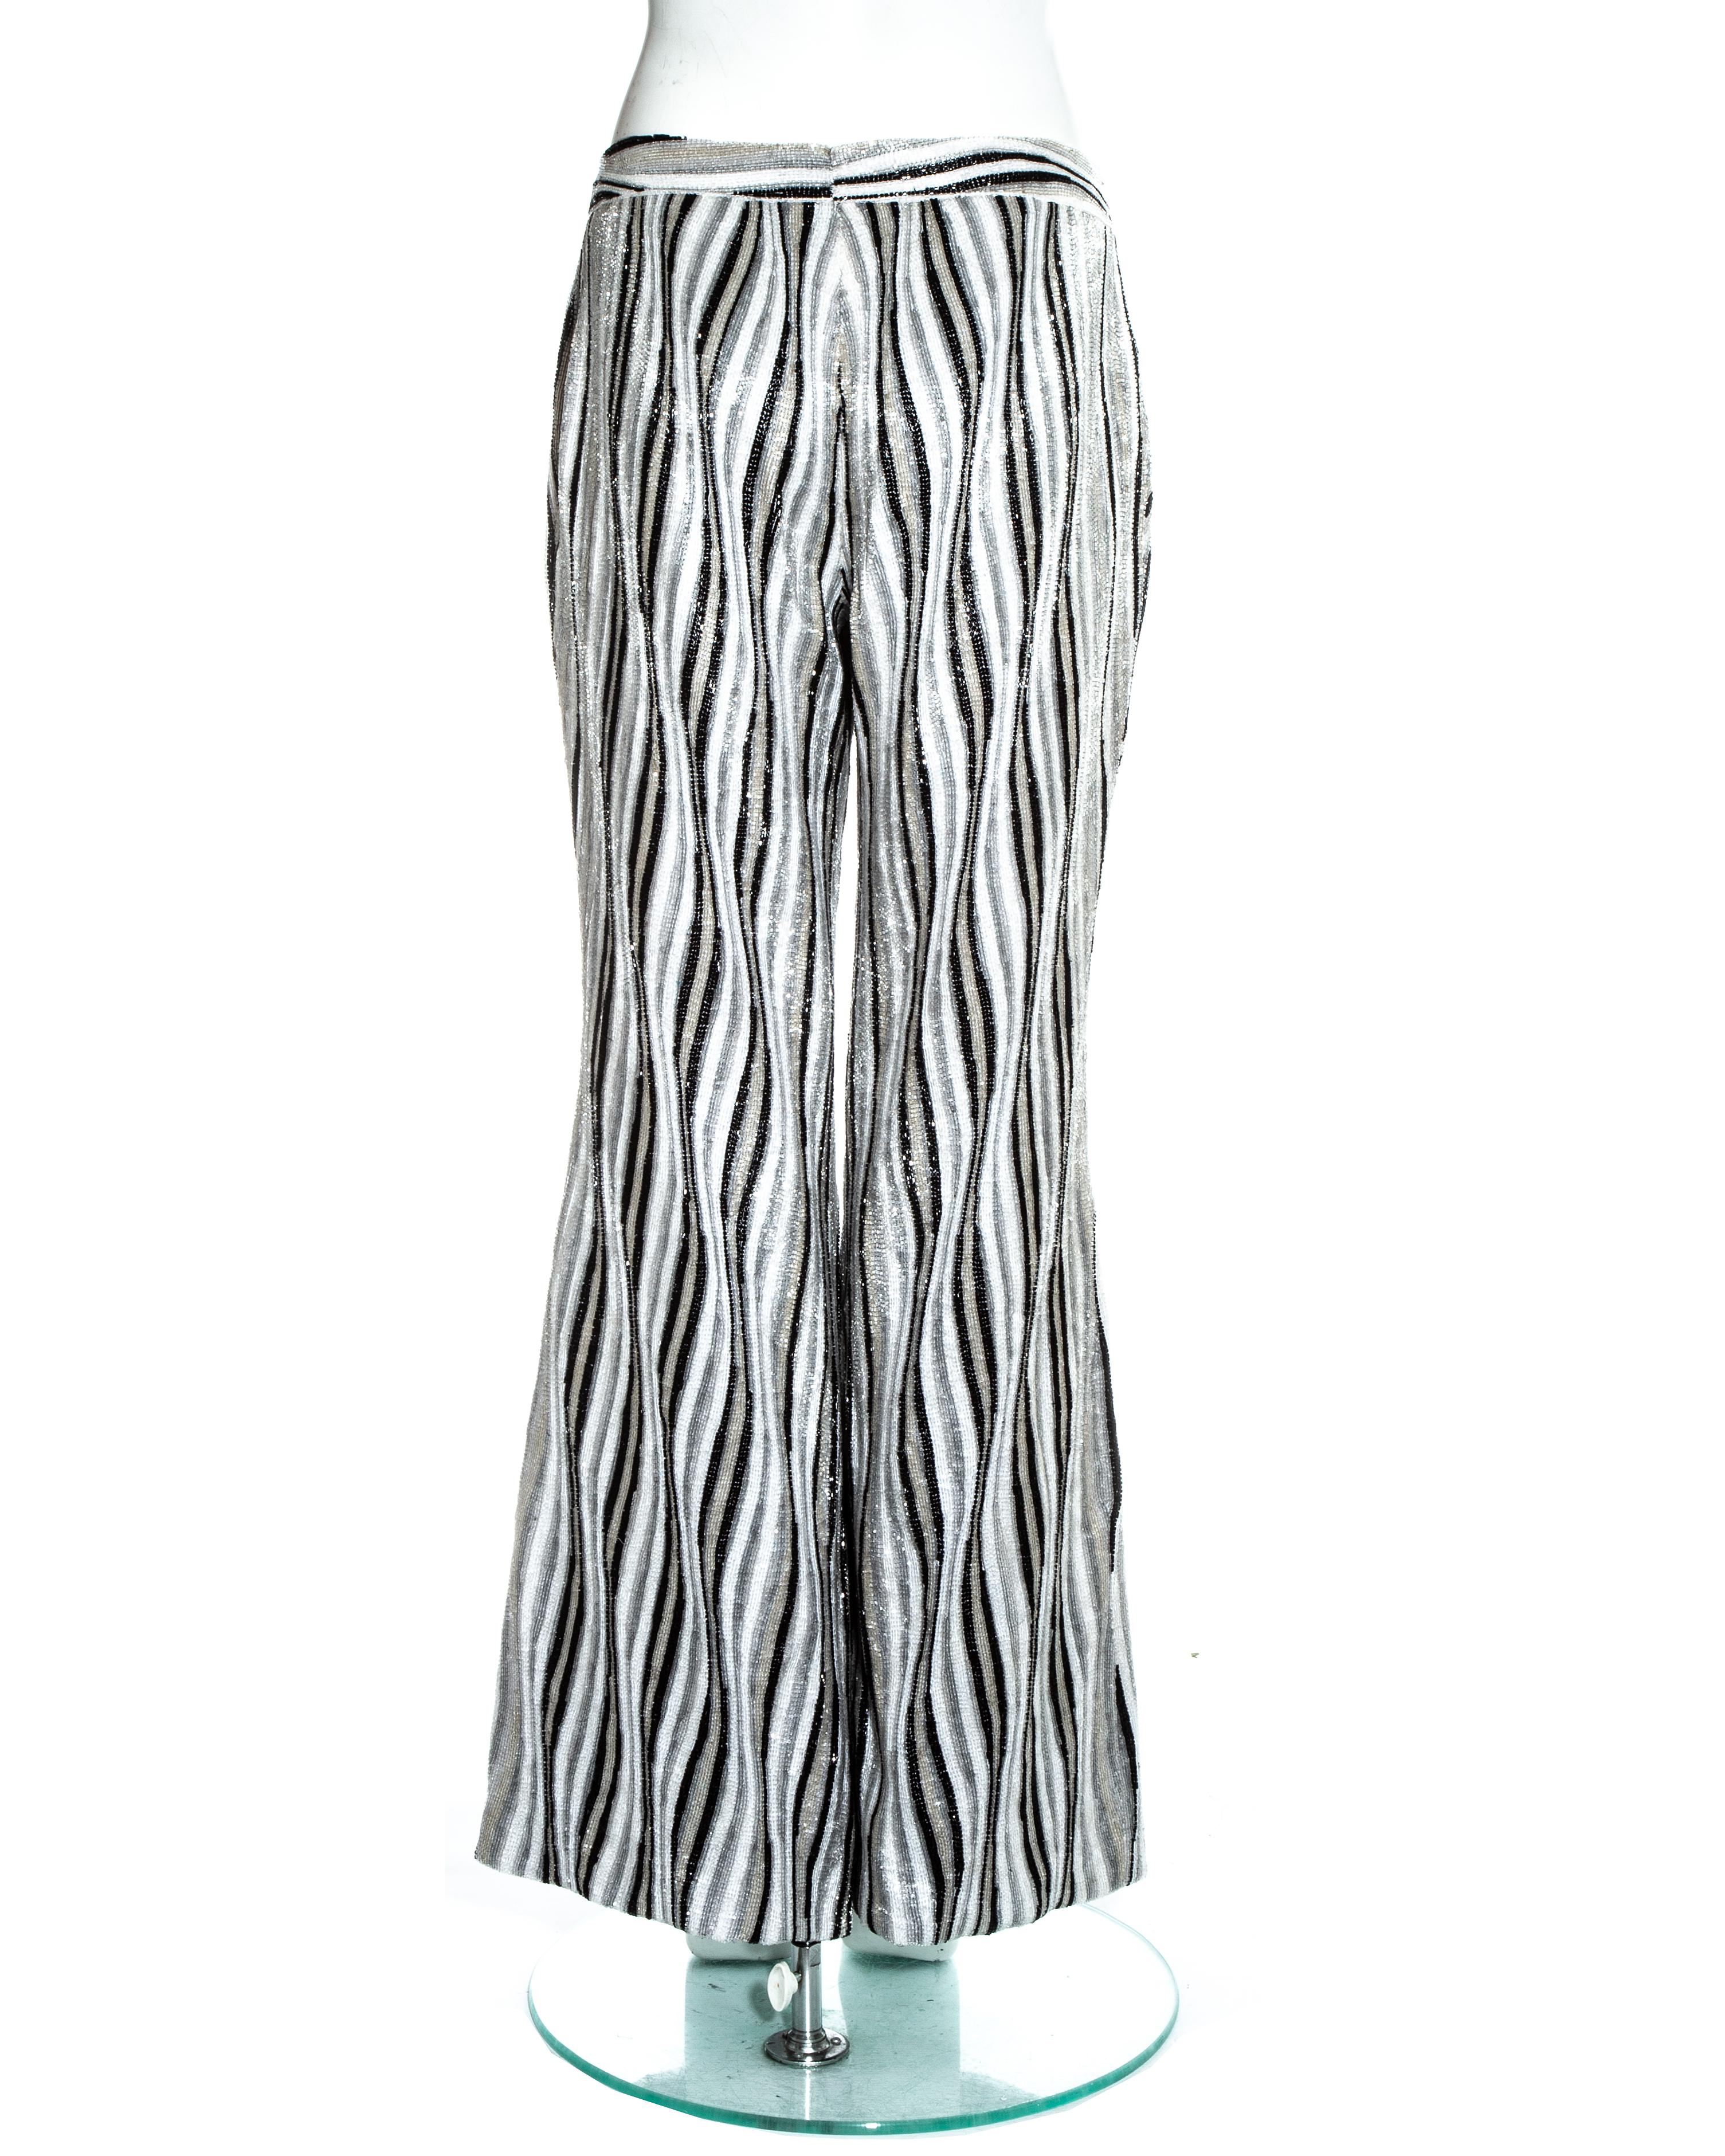 Pantalon de soirée évasé Gucci by Tom Ford, fortement perlé dans un imprimé rayé psychédélique.

Printemps-été 2000